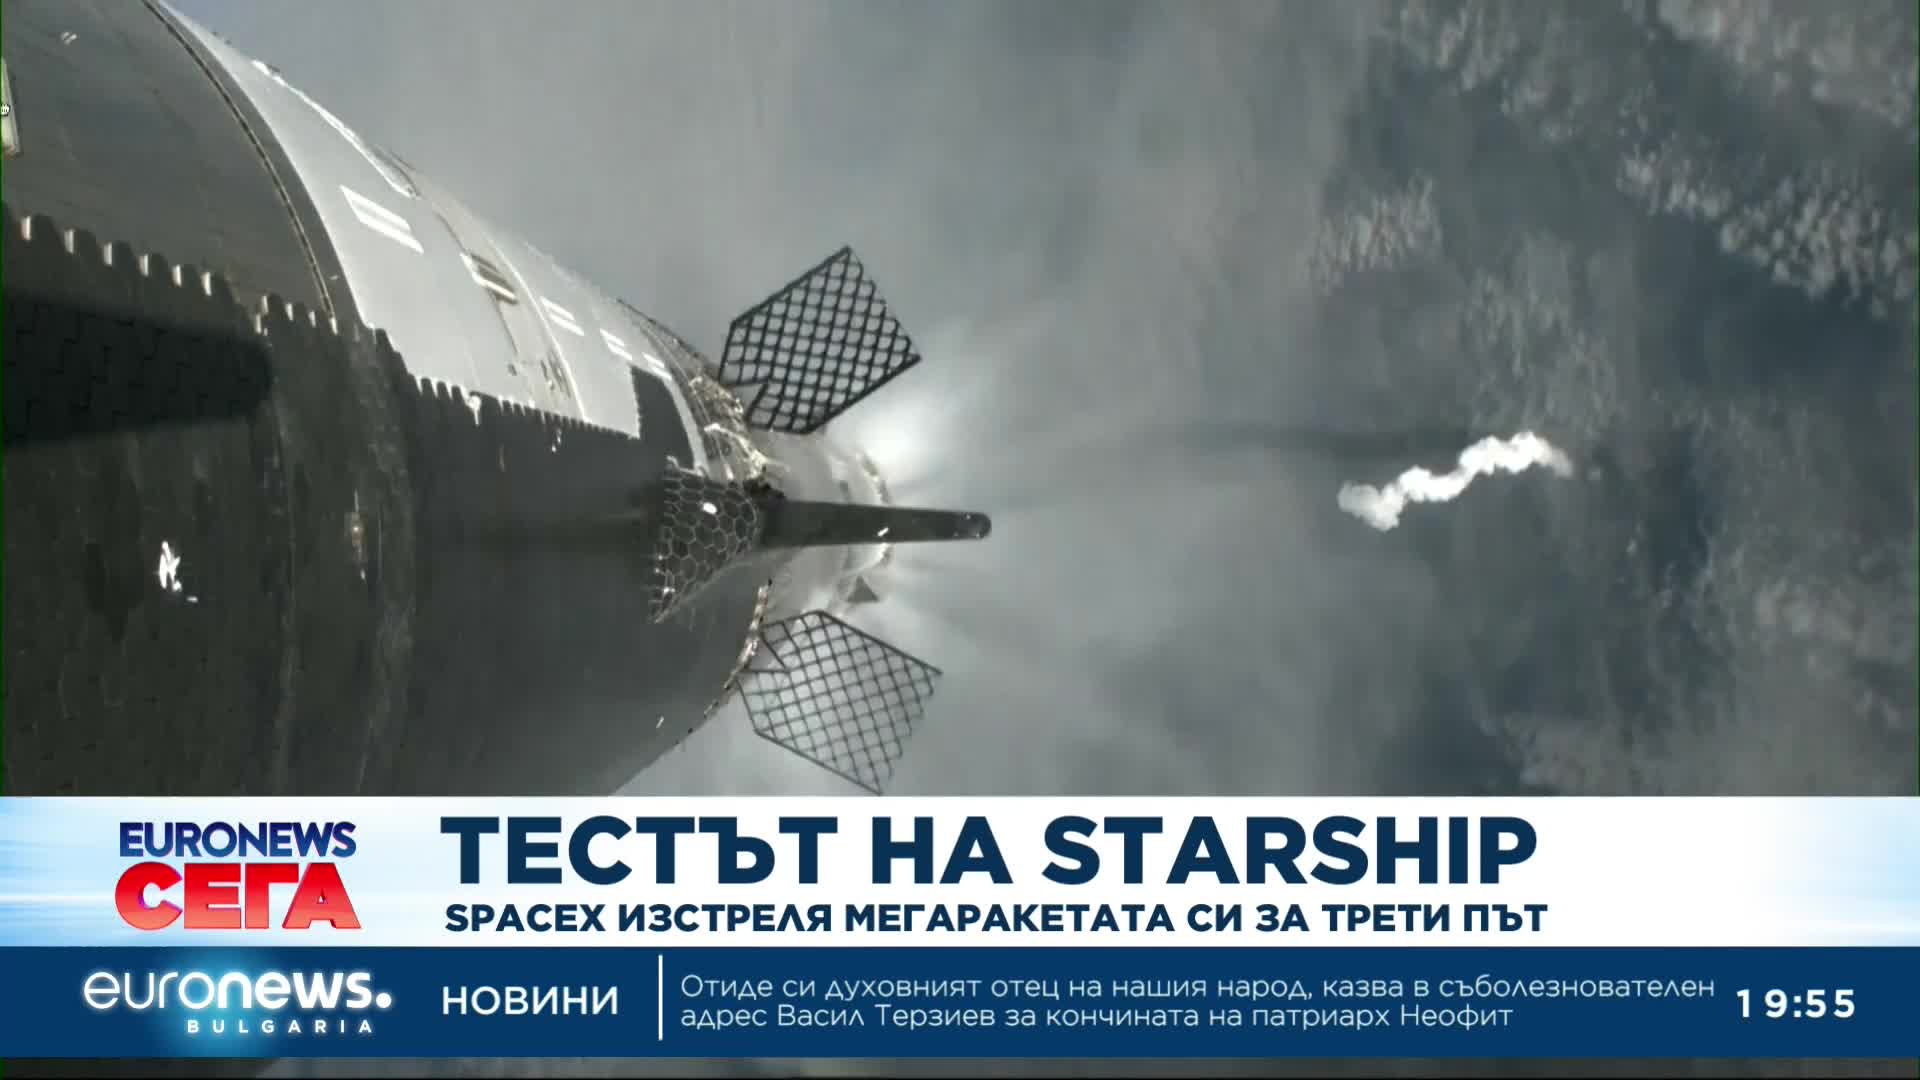 Все по-близо до успех: Мегаракетата Starship беше изгубена във финалната фаза на тестовия полет